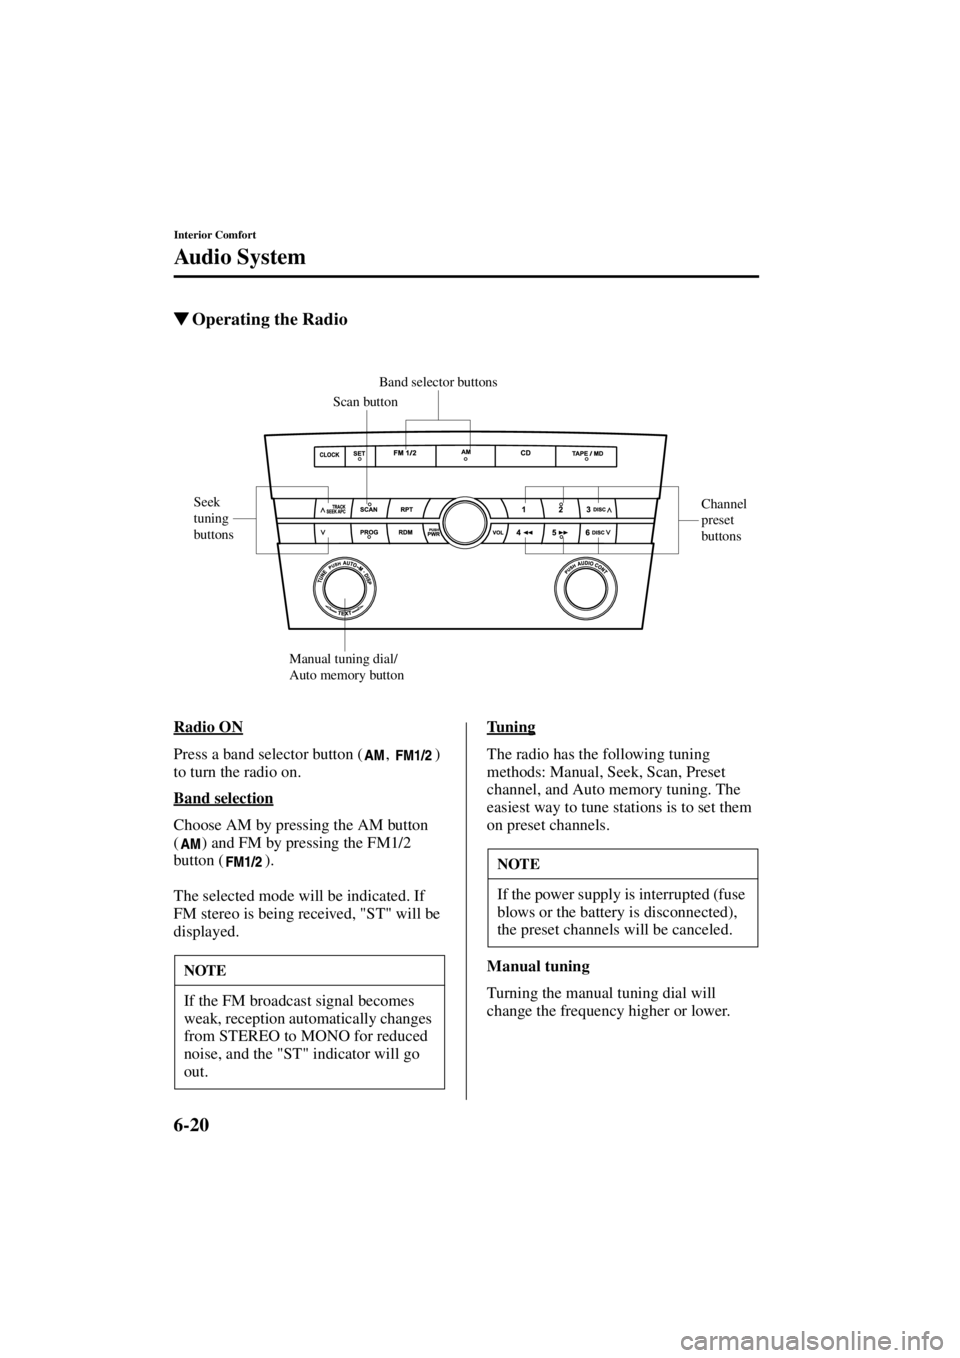 MAZDA MODEL 3 5-DOOR 2004  Owners Manual 6-20
Interior Comfort
Au di o S ys t em
Form No. 8S18-EA-03I
Operating the Radio
Radio ON
Press a band selector button ( ,  ) 
to turn the radio on.
Band selection
Choose AM by pressing the AM button